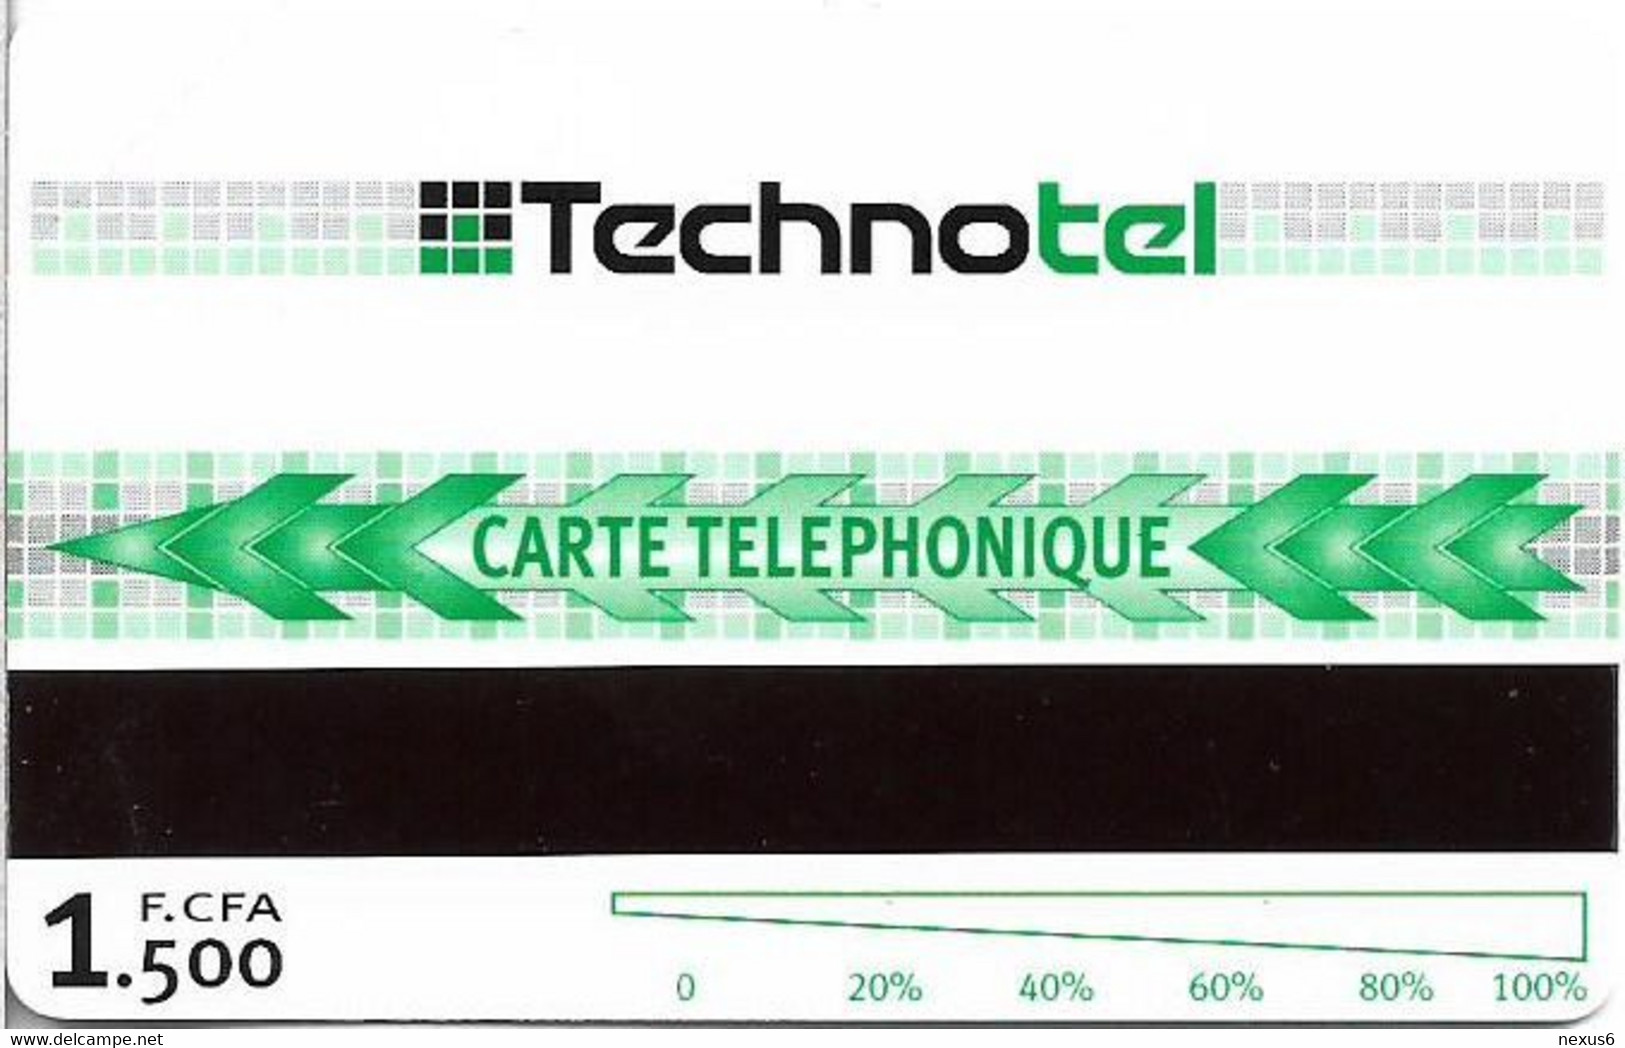 Congo Rep. (Brazzaville) - ONPT (Urmet) - Avec Technotel Communiquer C'est Plus Facile!, 2003, 1.500FCFA, Mint - Kongo